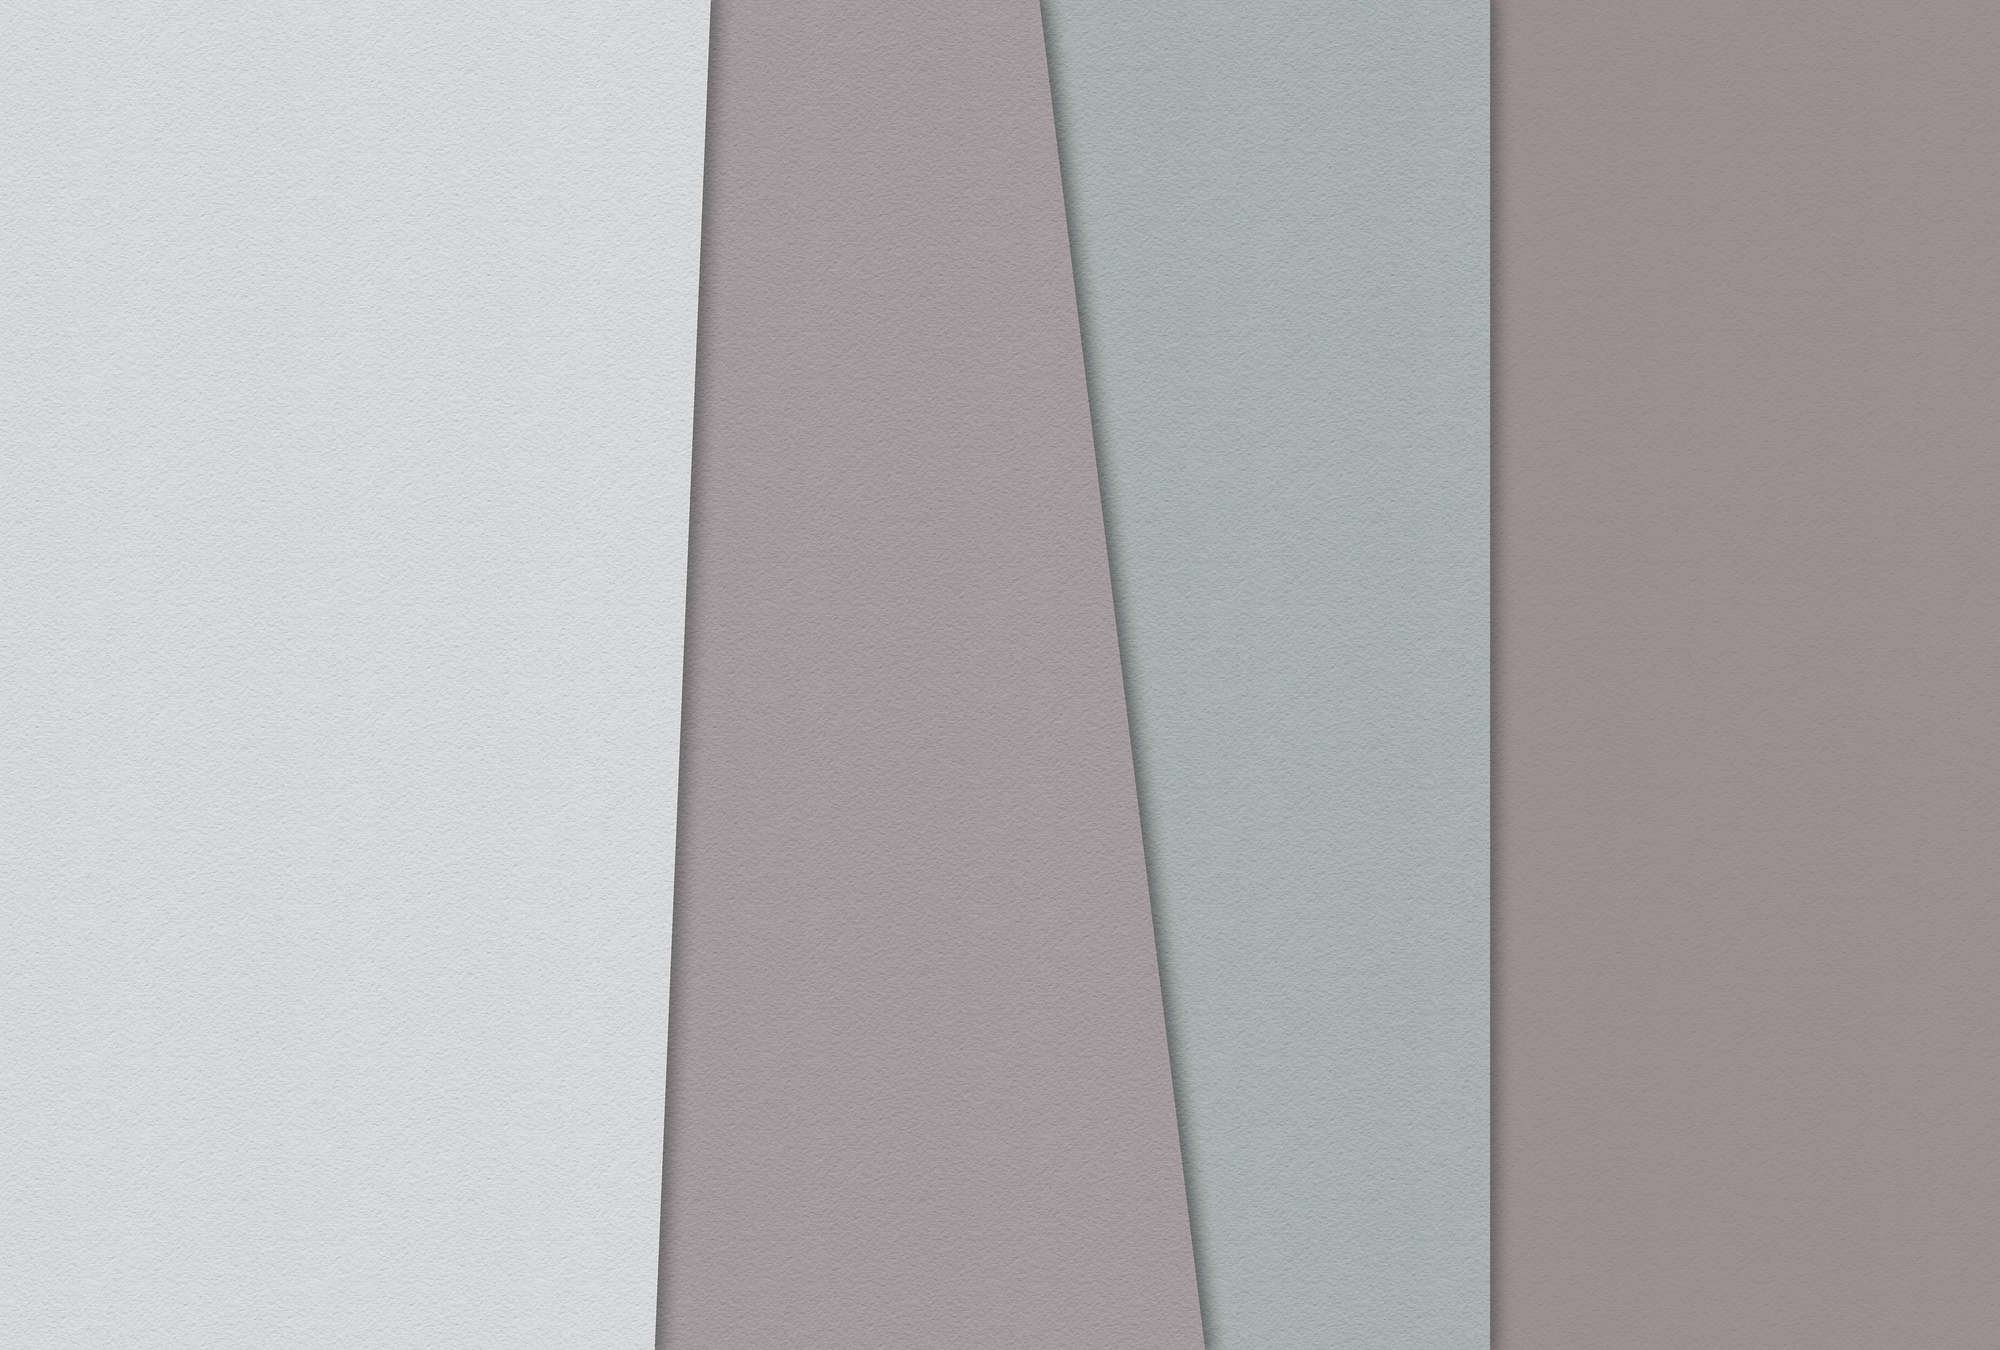             Carta stratificata 3 - Carta da parati minimalista Campi di colore Natura qualita consistenza di carta fatta a mano - Blu, crema | Vello liscio perlato
        